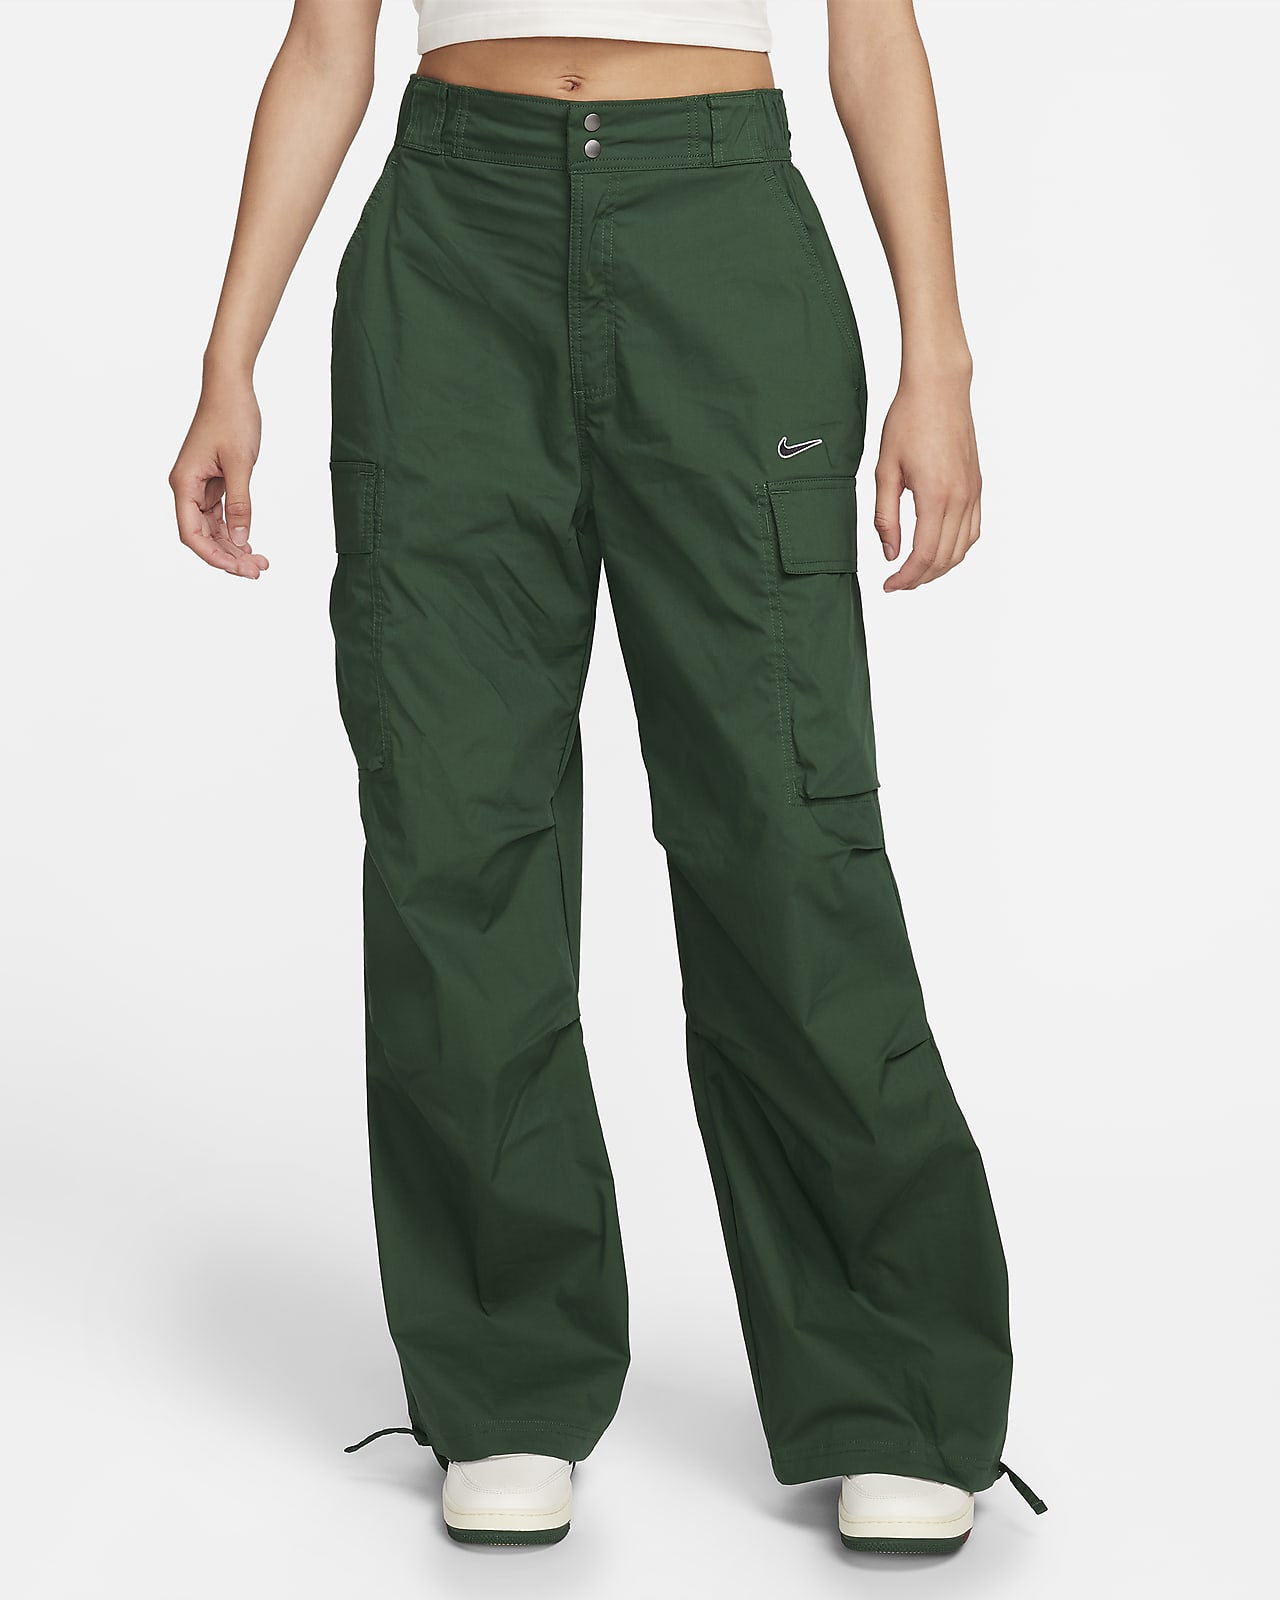 Pantalon cargo taille haute vert foncé femme